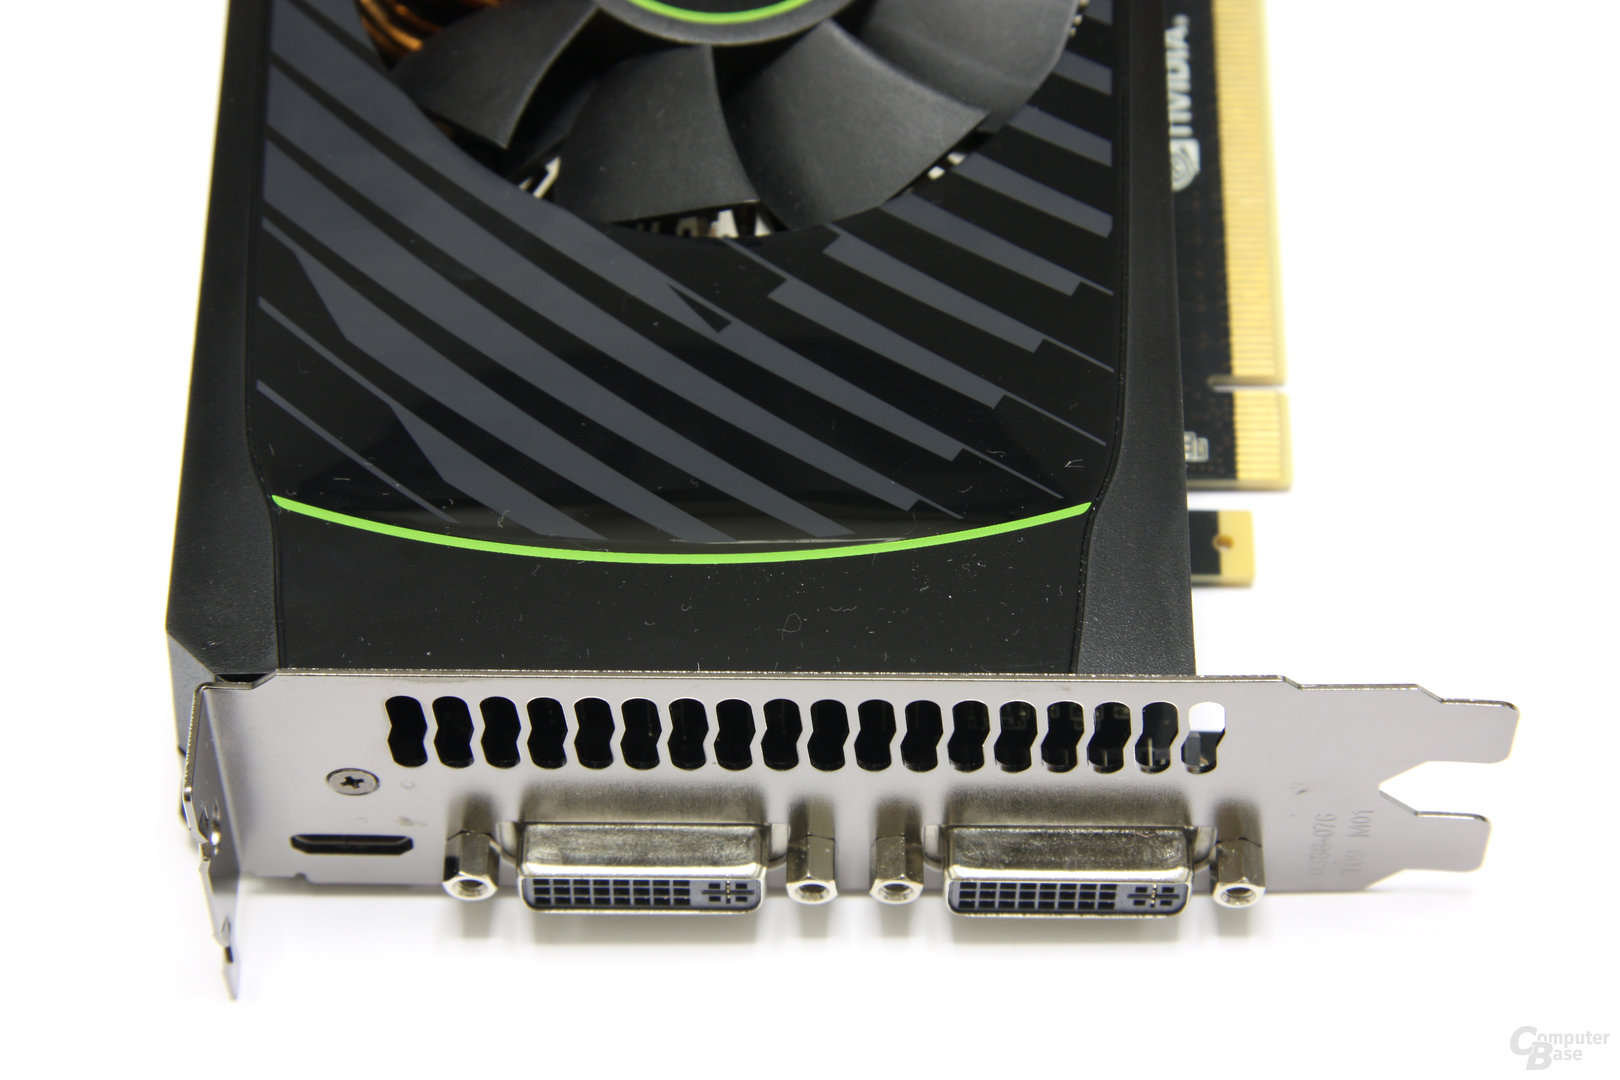 GeForce GTX 560 Ti Anschlüsse